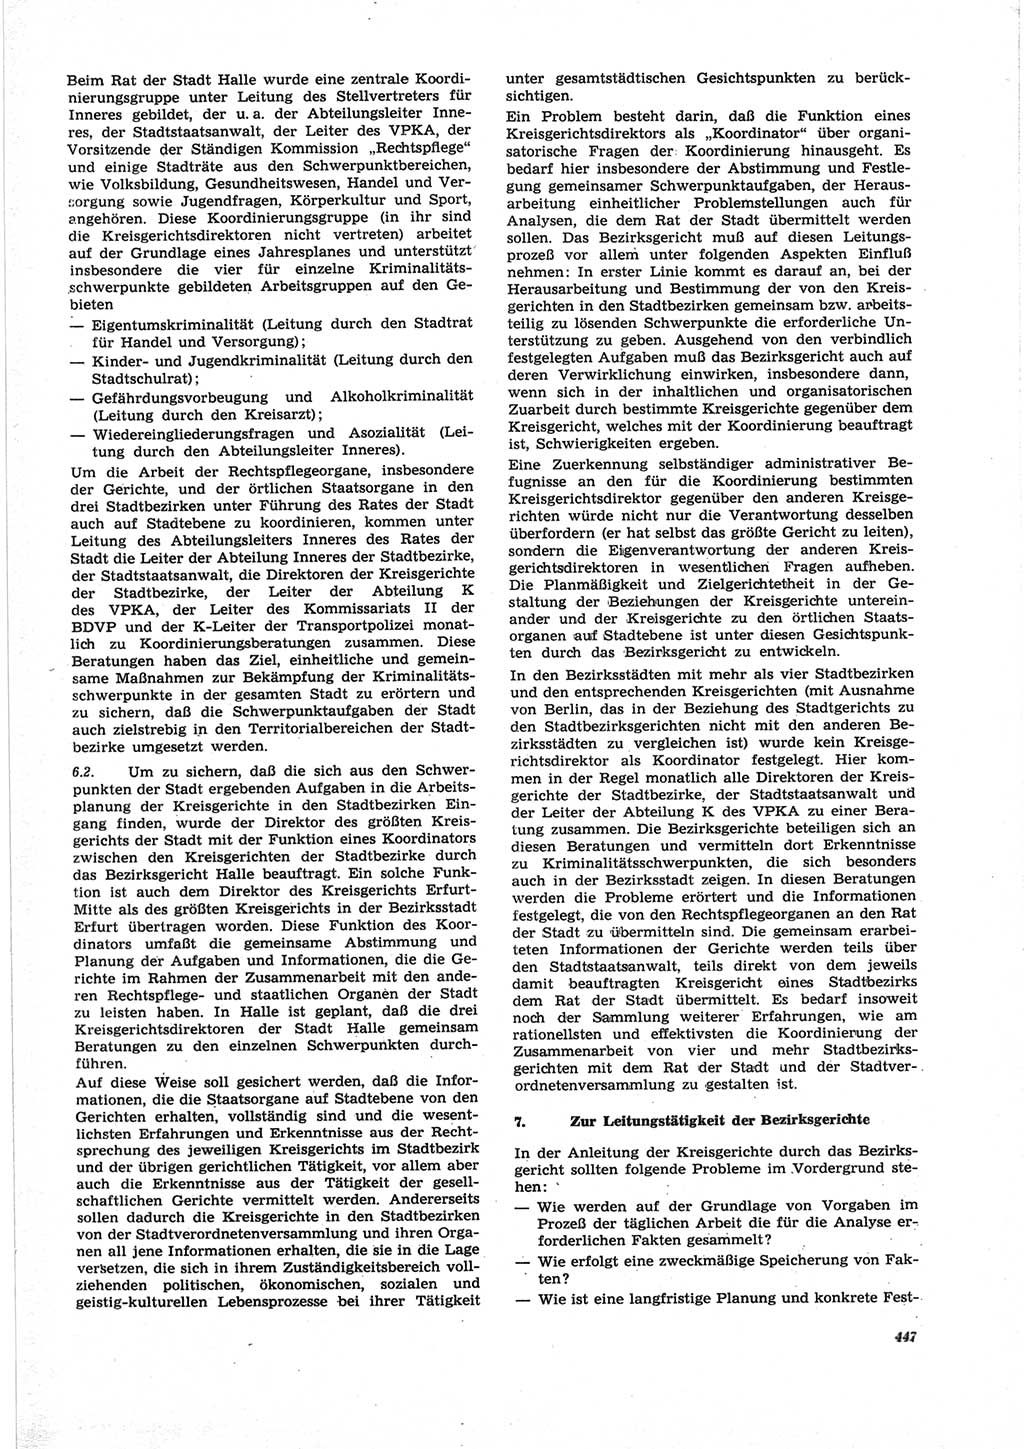 Neue Justiz (NJ), Zeitschrift für Recht und Rechtswissenschaft [Deutsche Demokratische Republik (DDR)], 25. Jahrgang 1971, Seite 447 (NJ DDR 1971, S. 447)